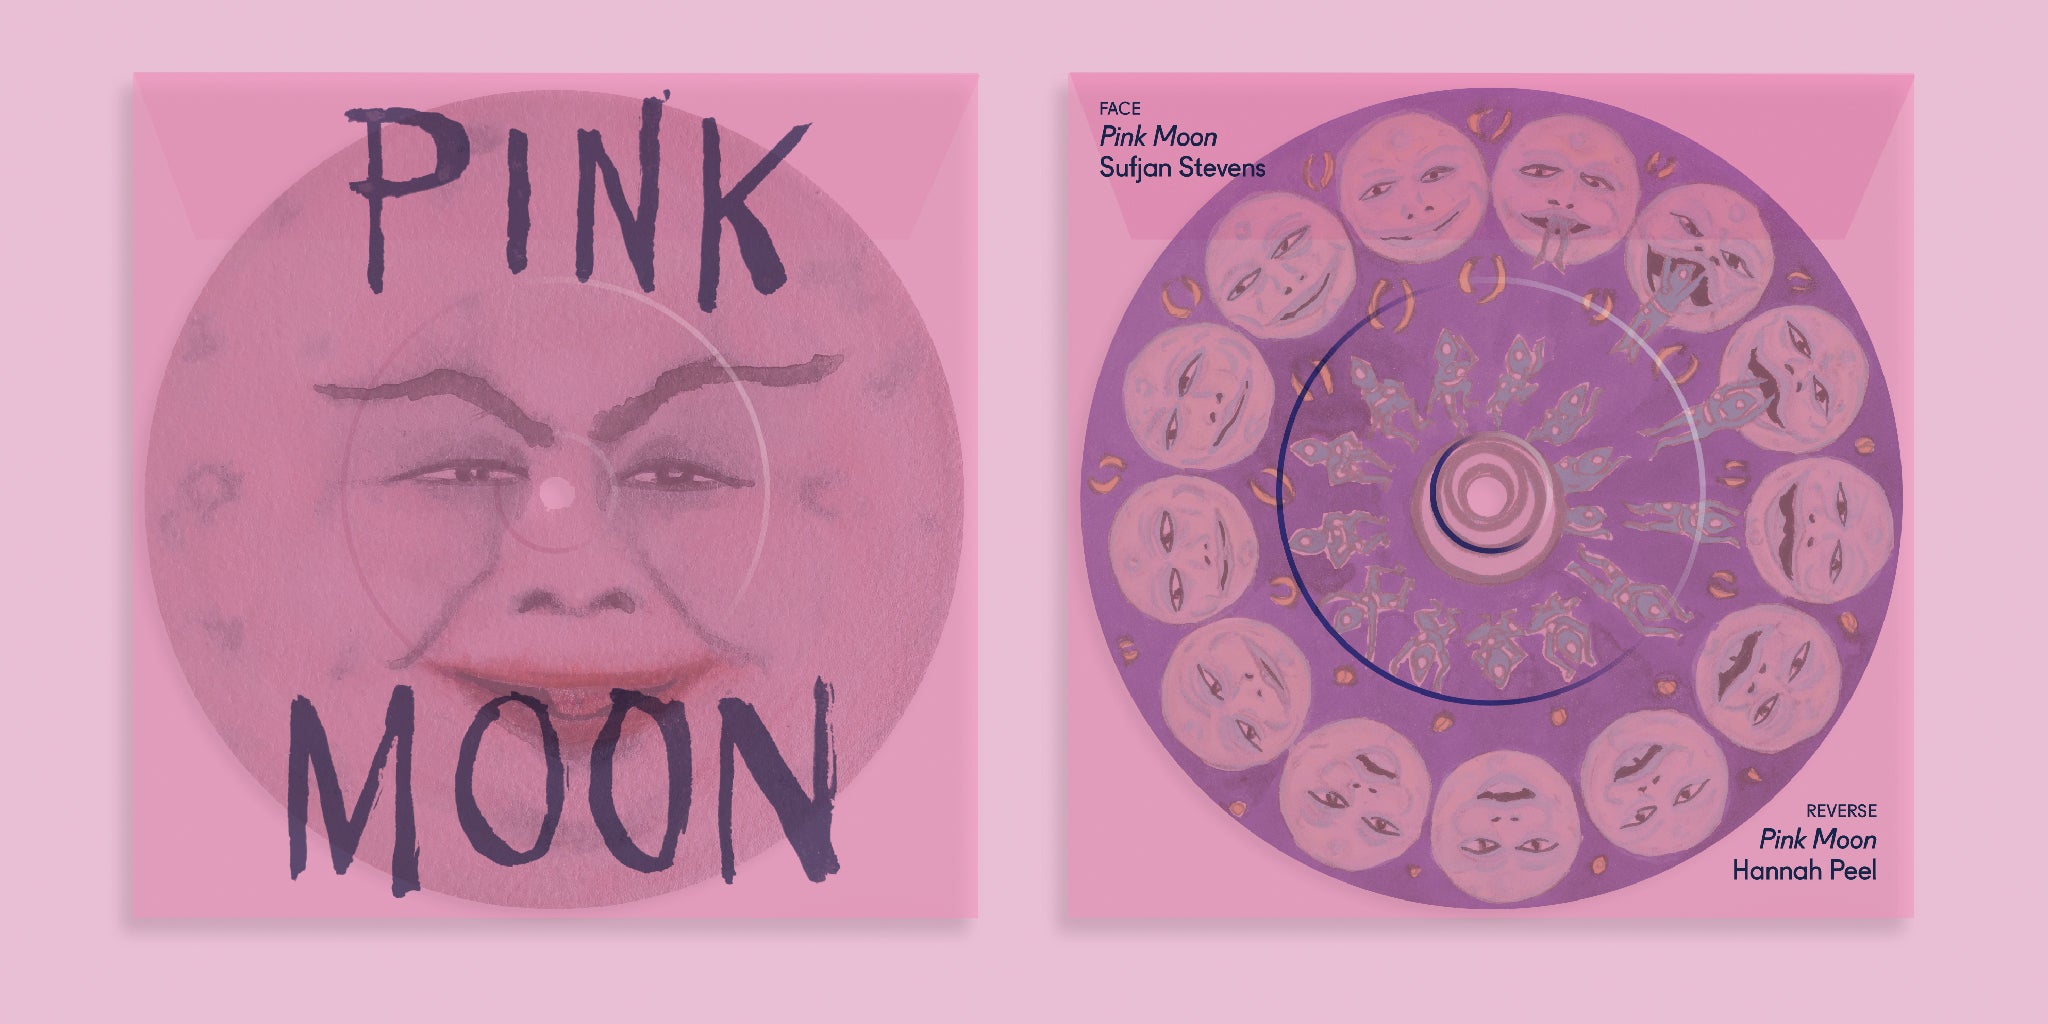 PINK MOON (SPECIAL EDITION) - Marcel Dzama, Sufjan Stevens, Hannah Peel